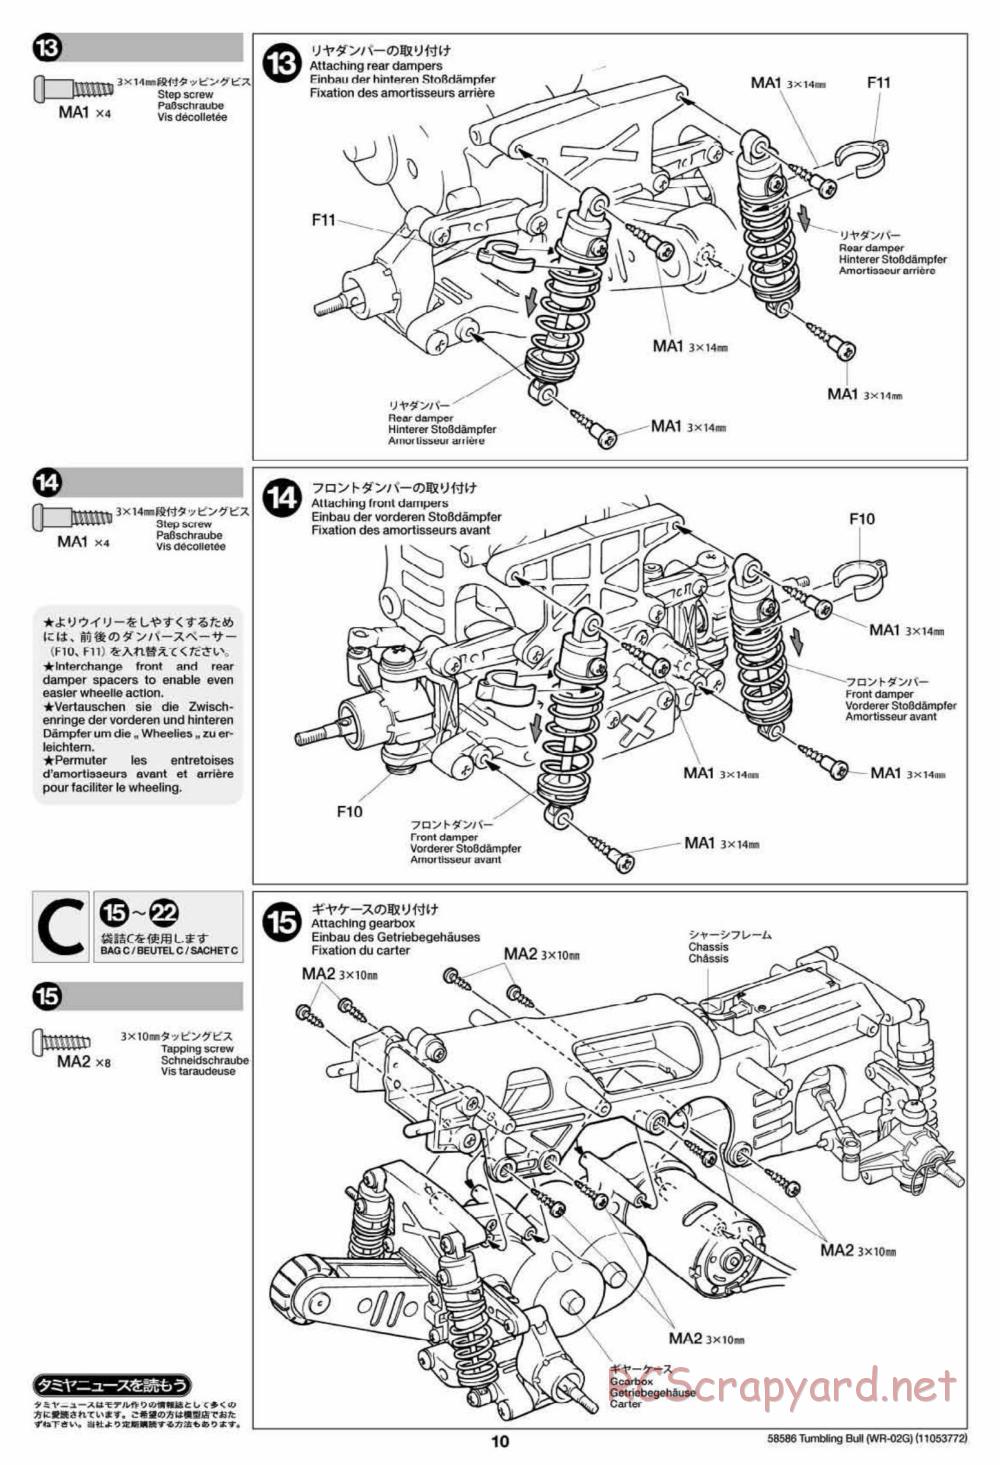 Tamiya - Tumbling Bull Chassis - Manual - Page 10